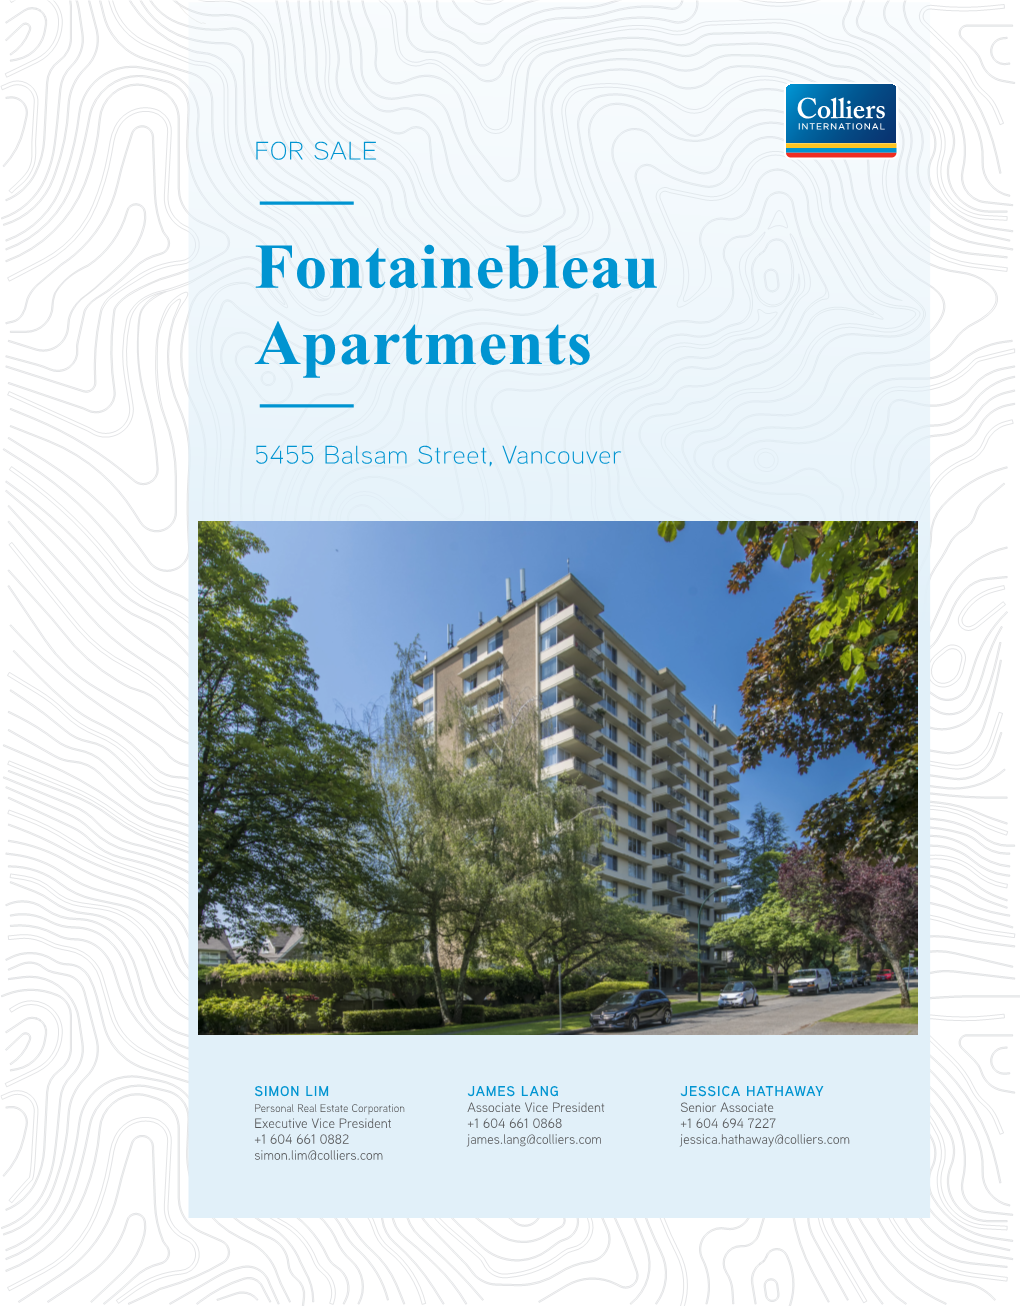 Fontainebleau Apartments